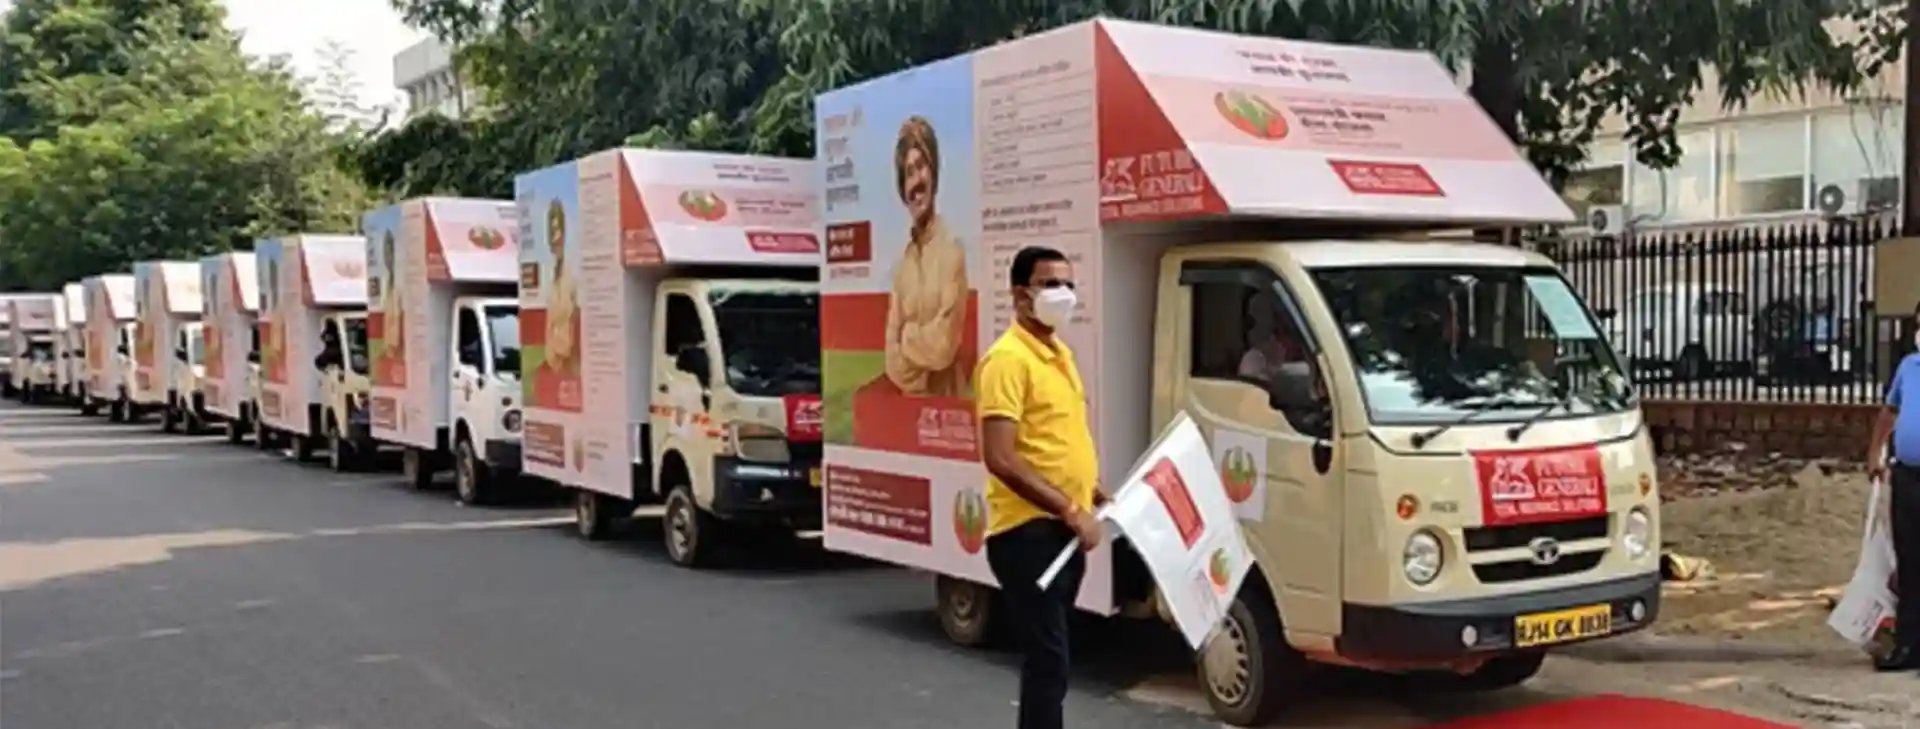 Mobile van advertising in India